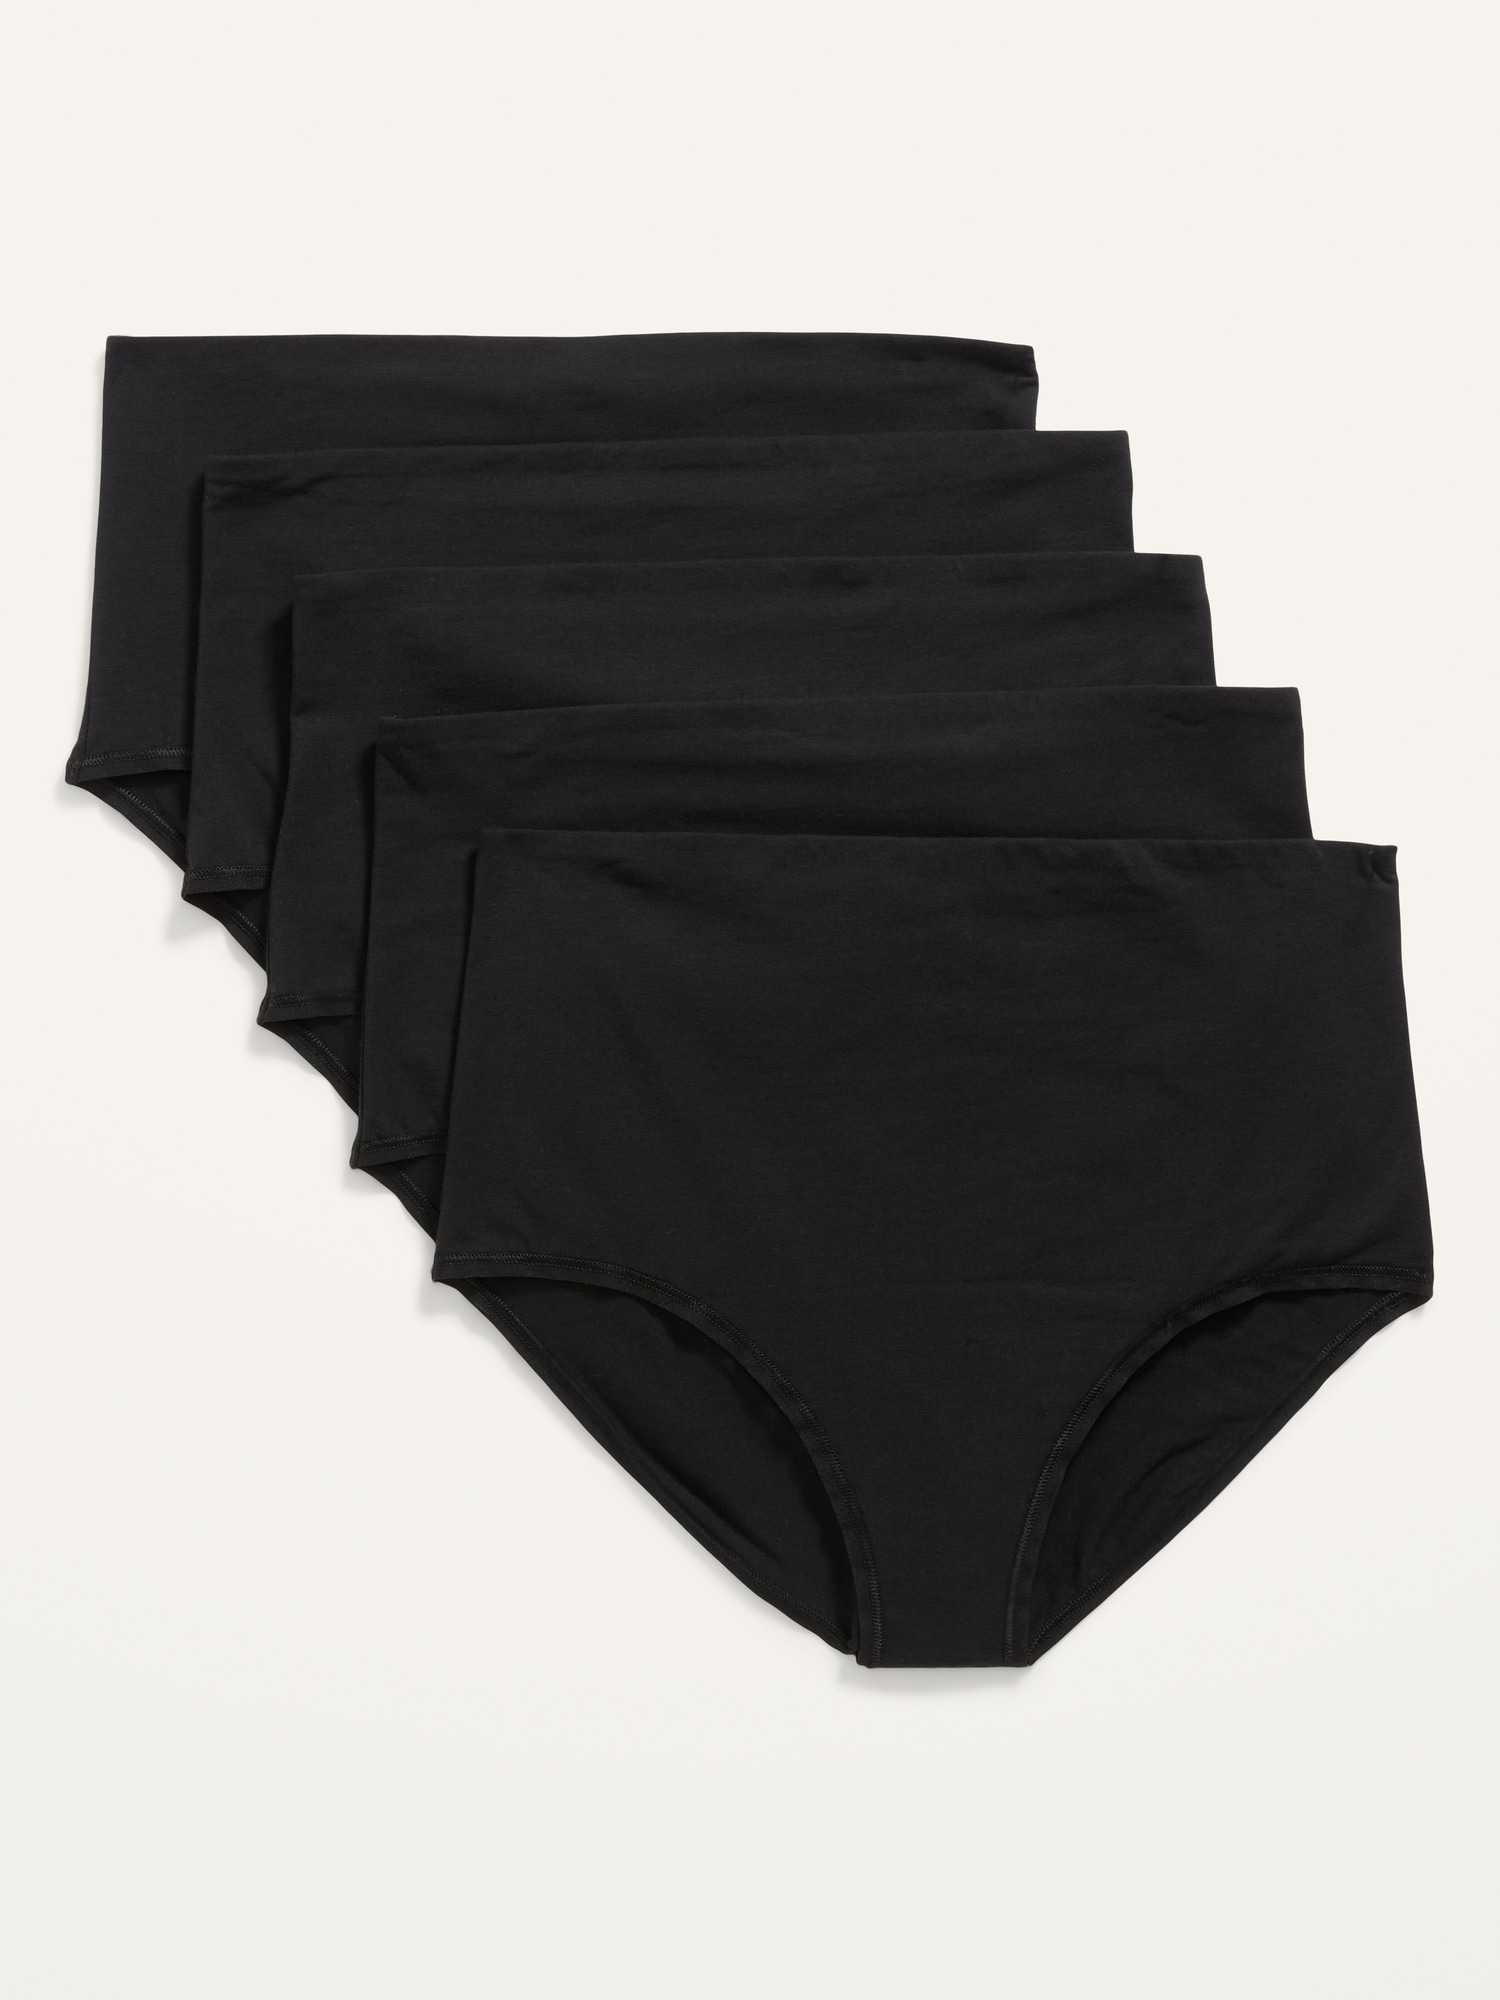 VBARHMQRT Womens Briefs Underwear Cotton Spandex Maternity